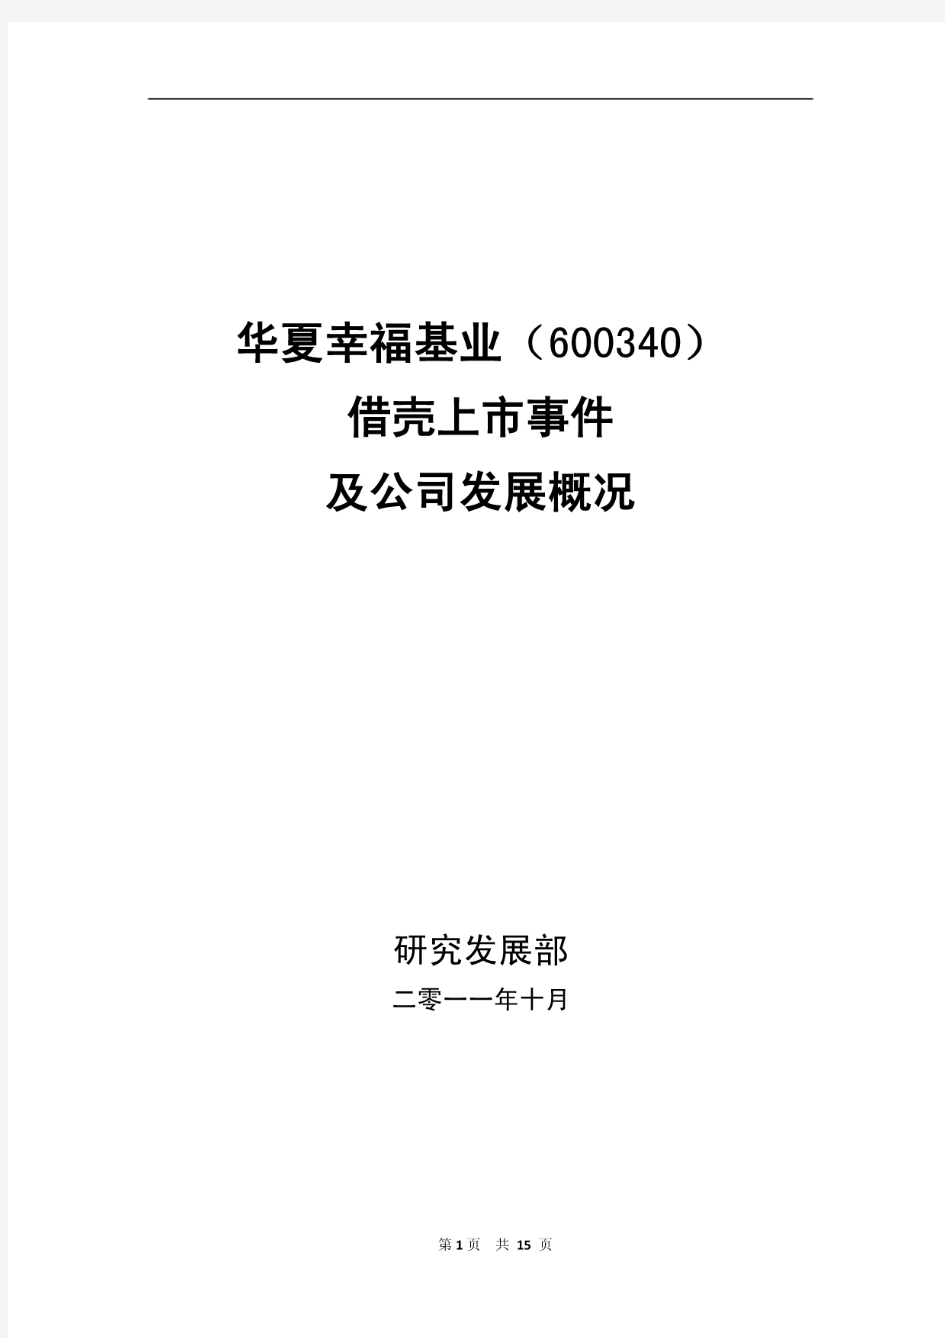 华夏幸福基业(600340)借壳上市事件及公司发展概况